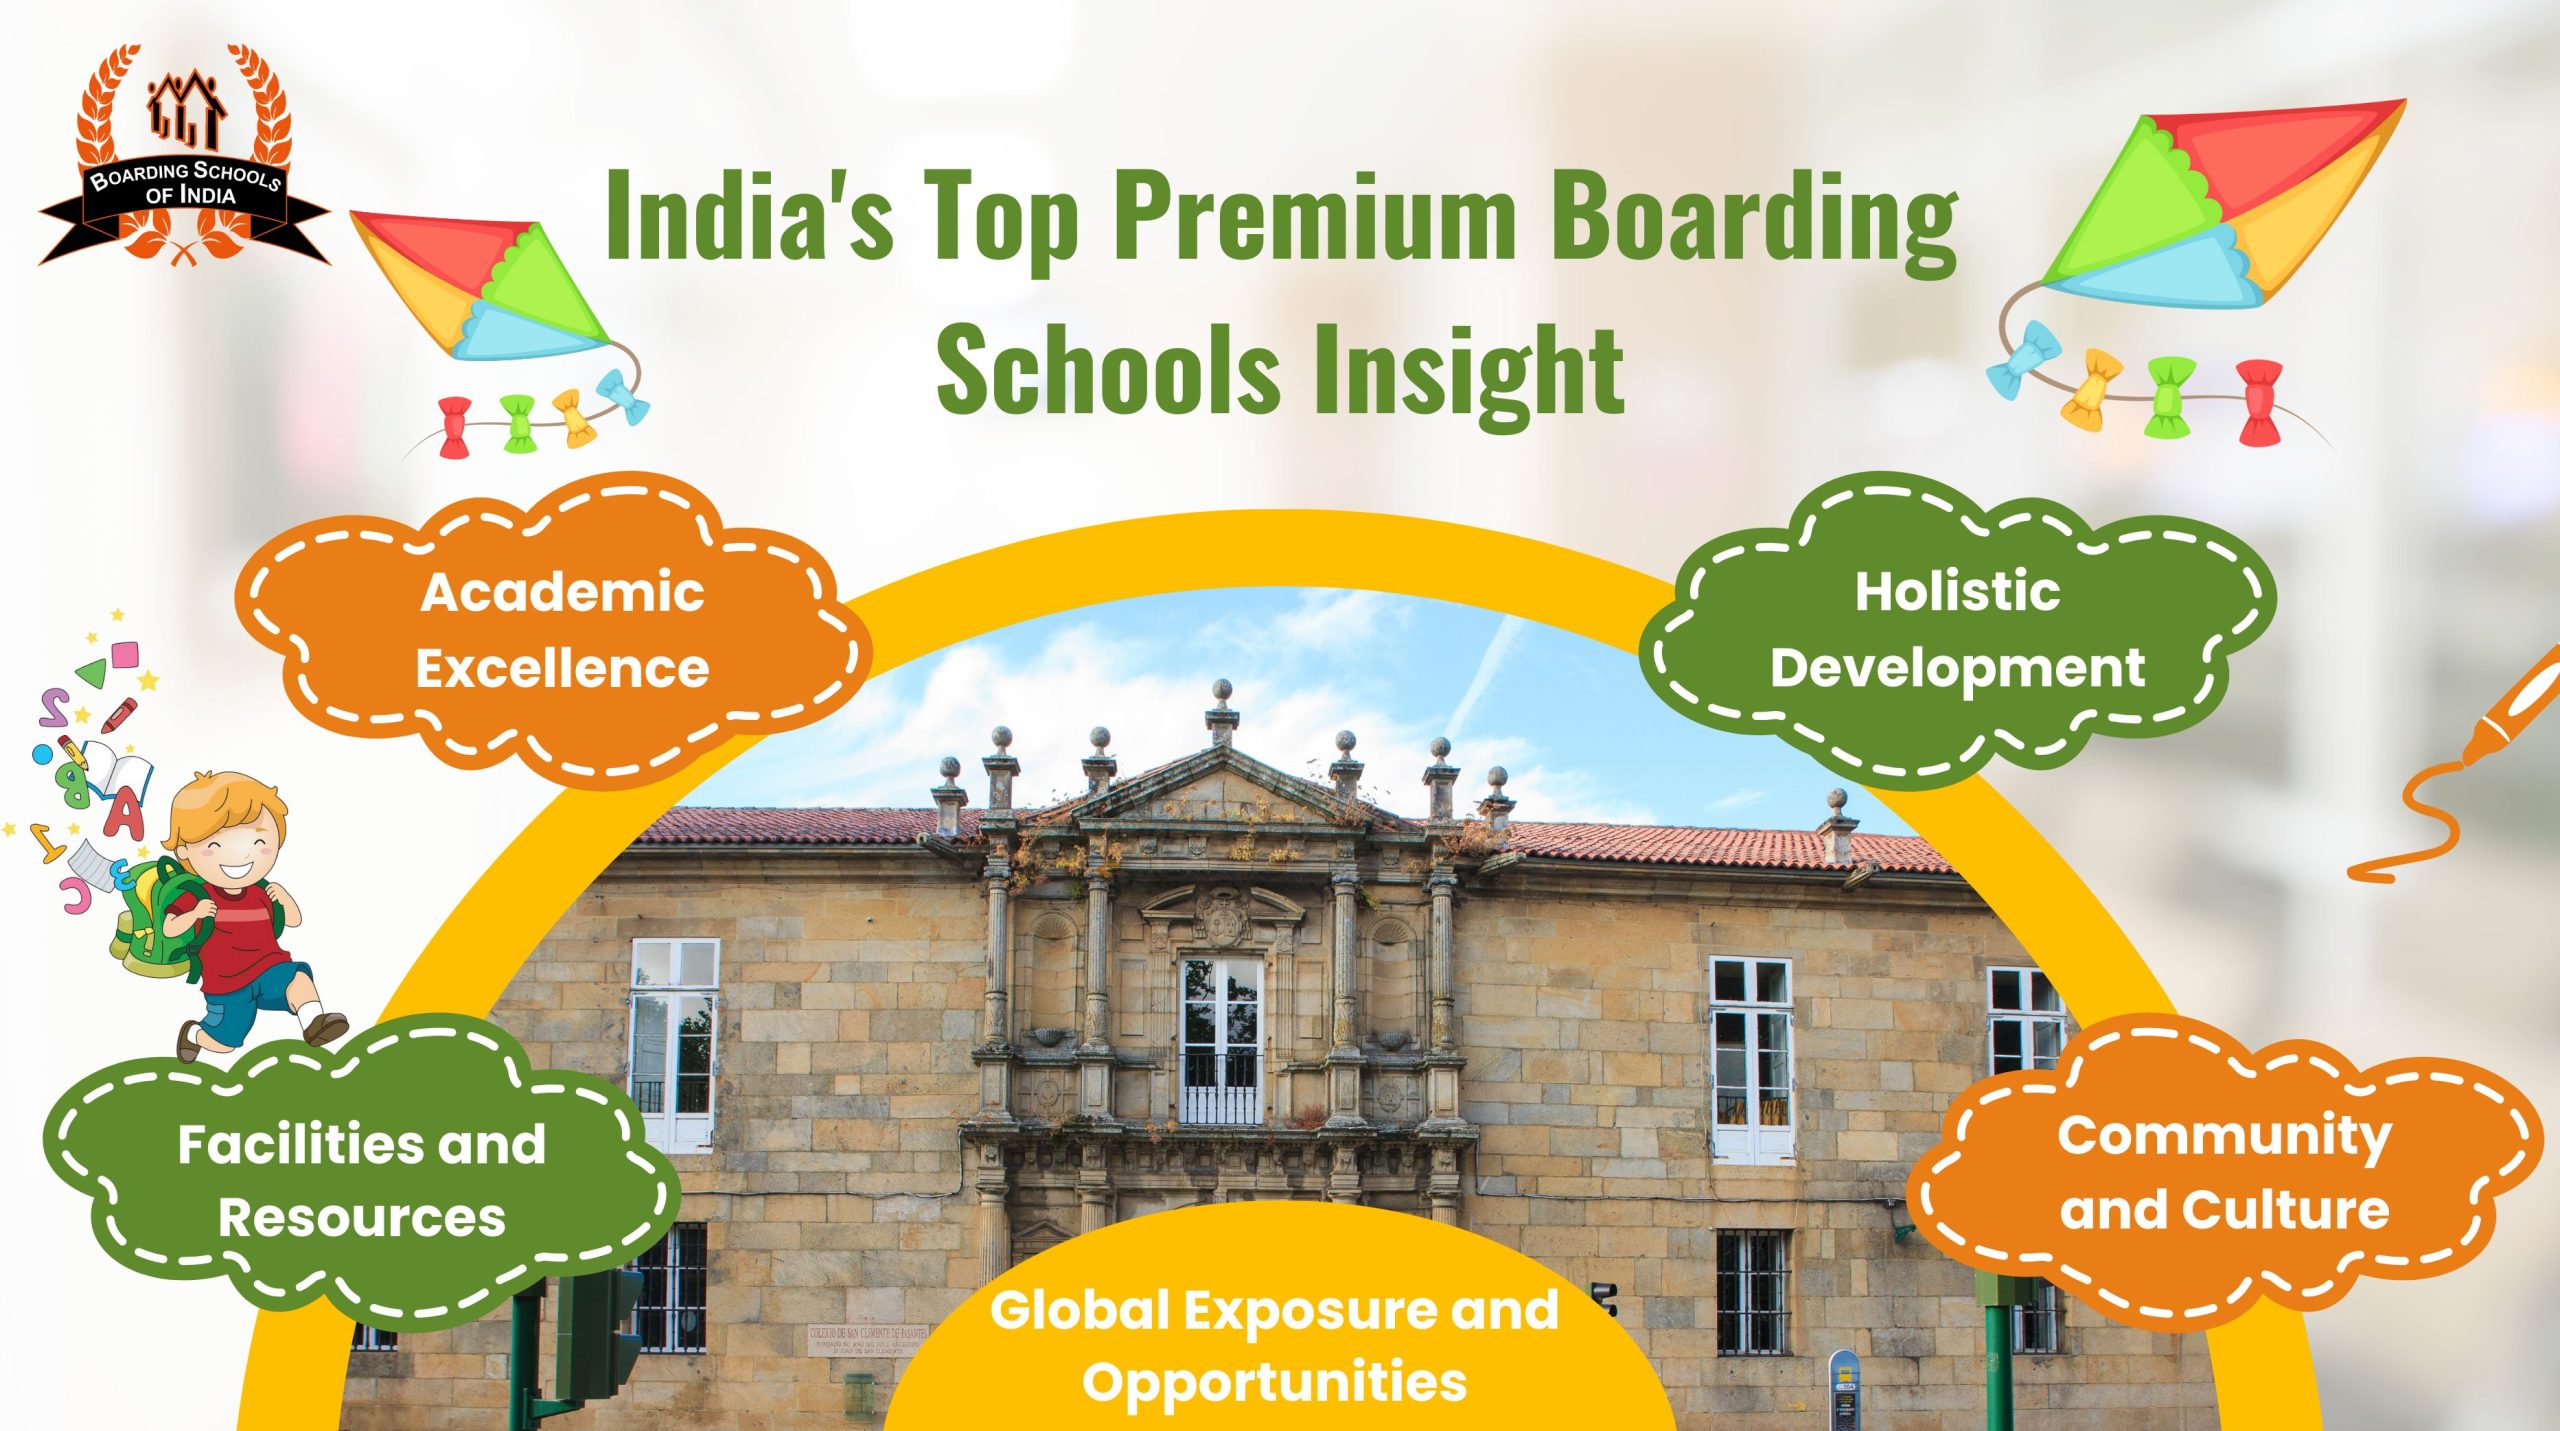 India's Top Premium Boarding Schools’ Insight